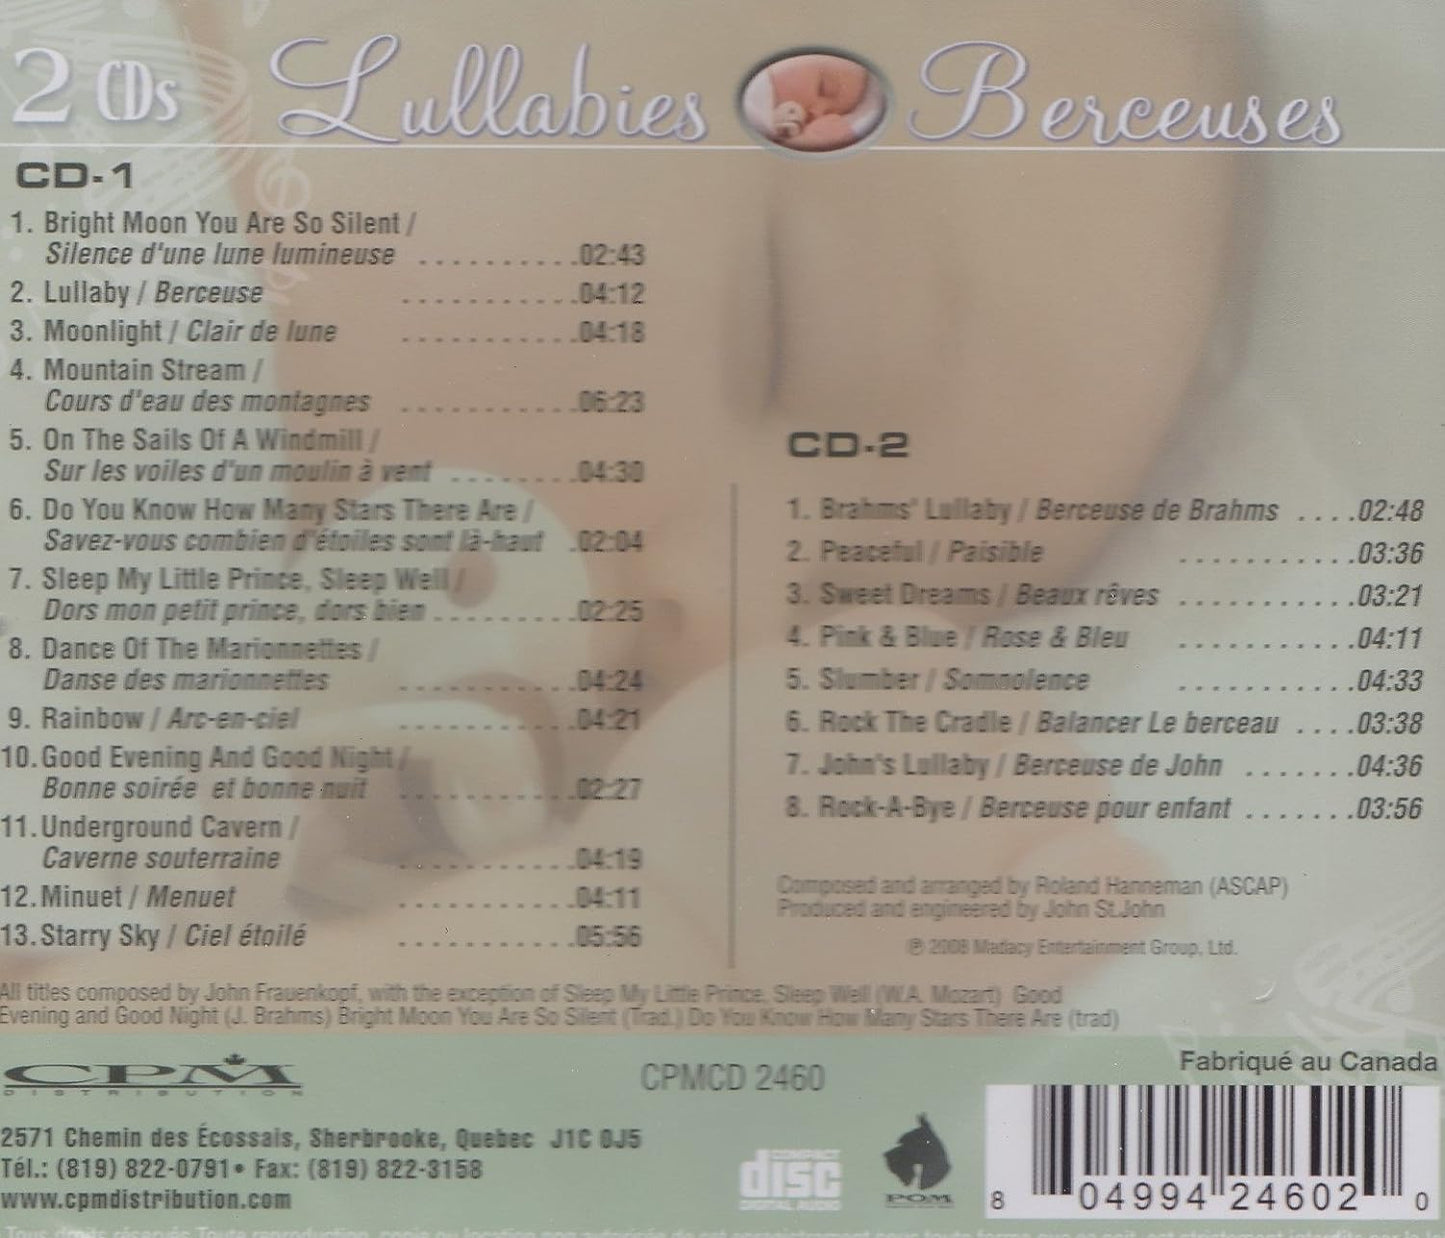 Lullabies - Berceuses (2 Discs Set) [Audio CD] Roland Hanneman